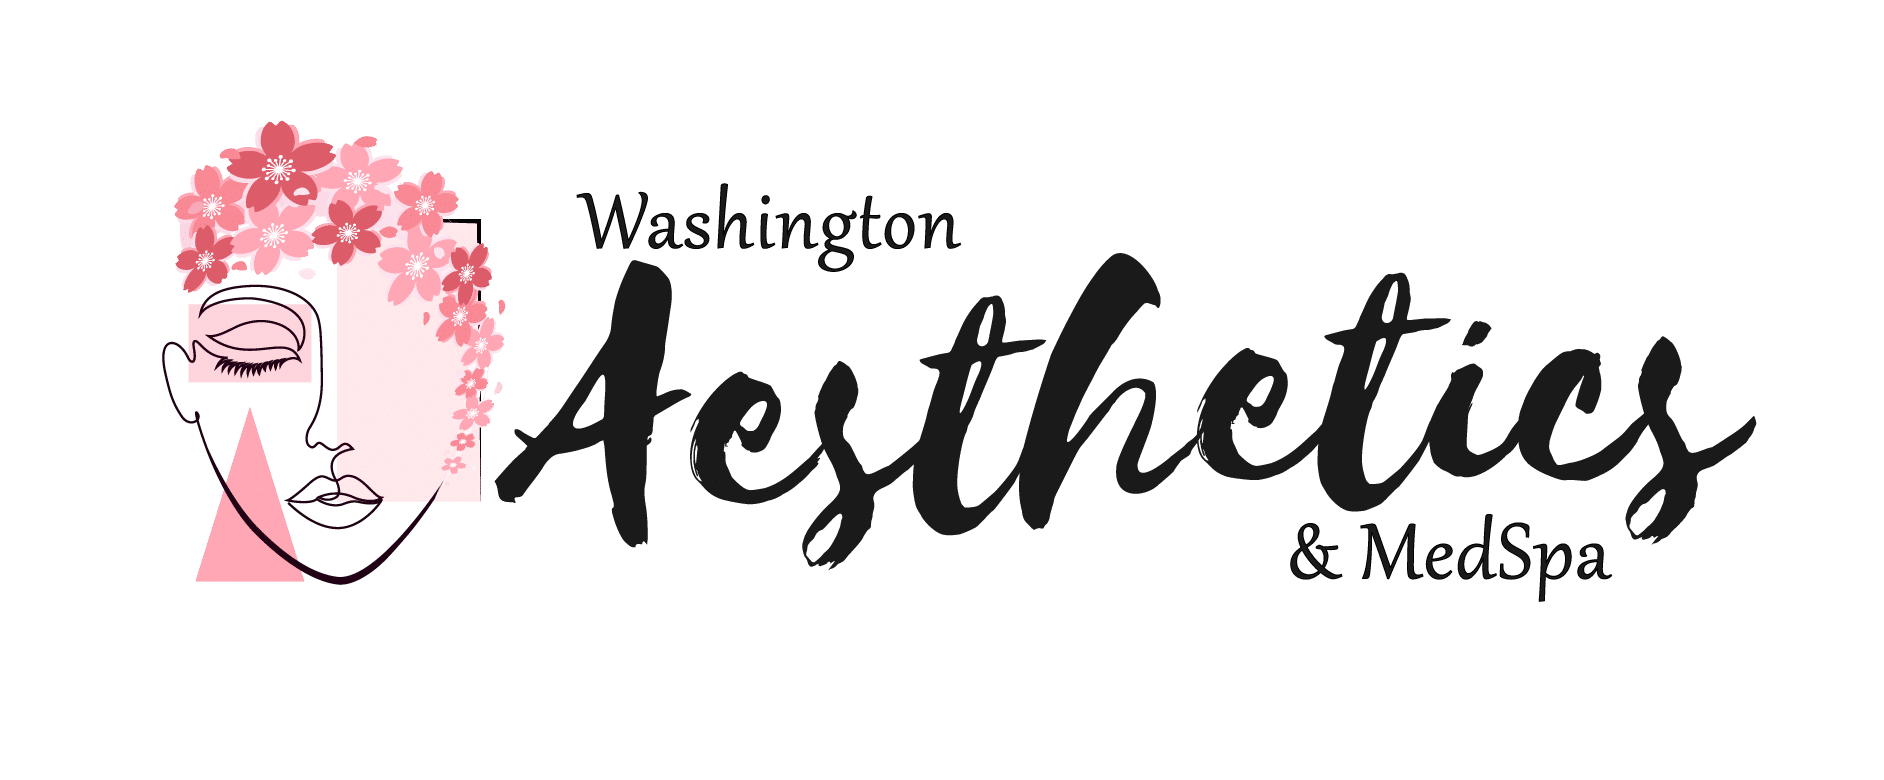 Washington Aesthetics & Medspa Logo